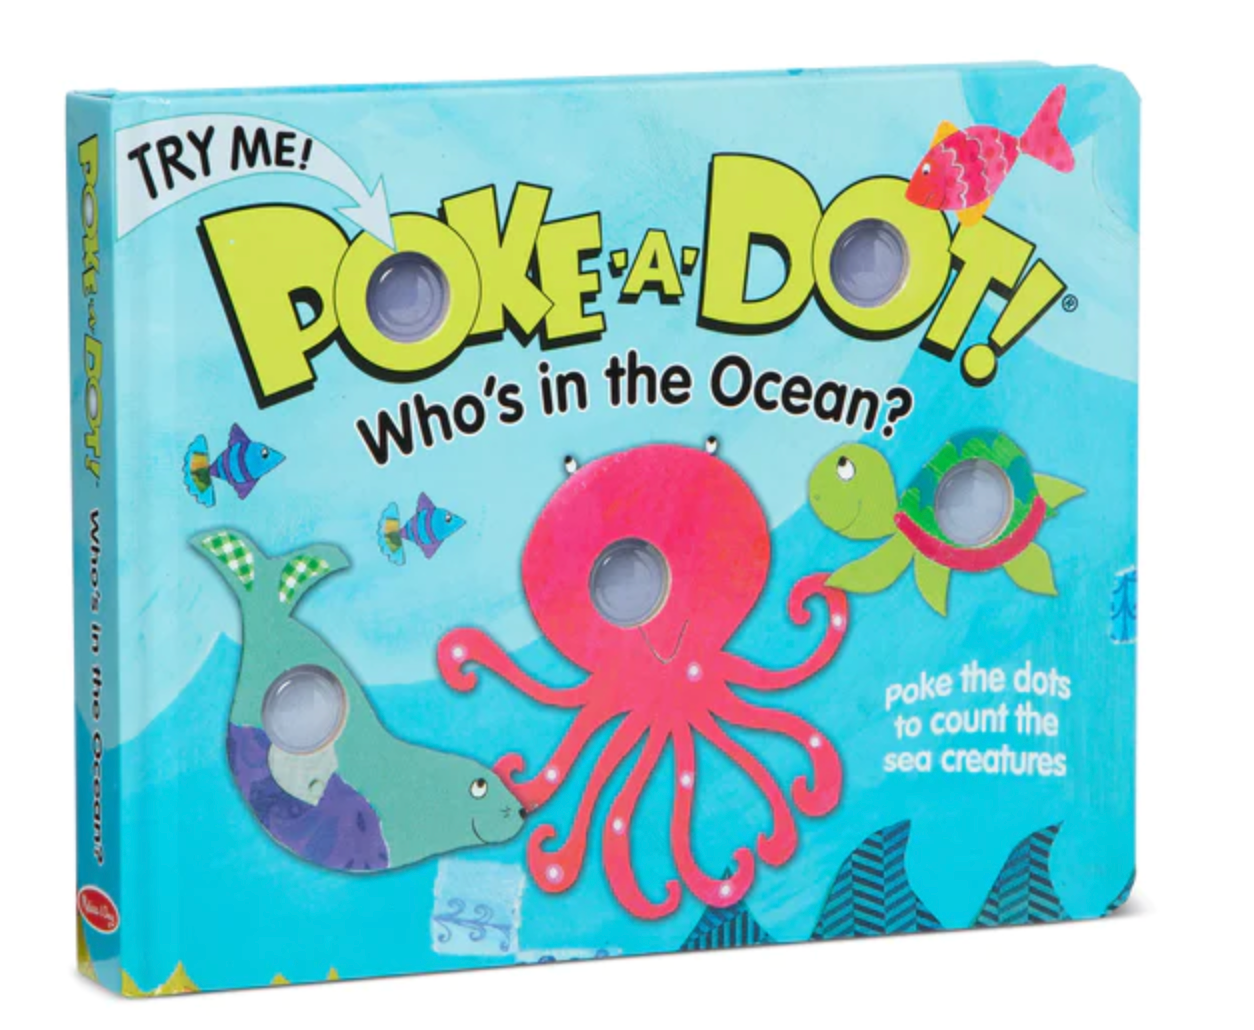 Poke-A-Dot Who's in the Ocean?